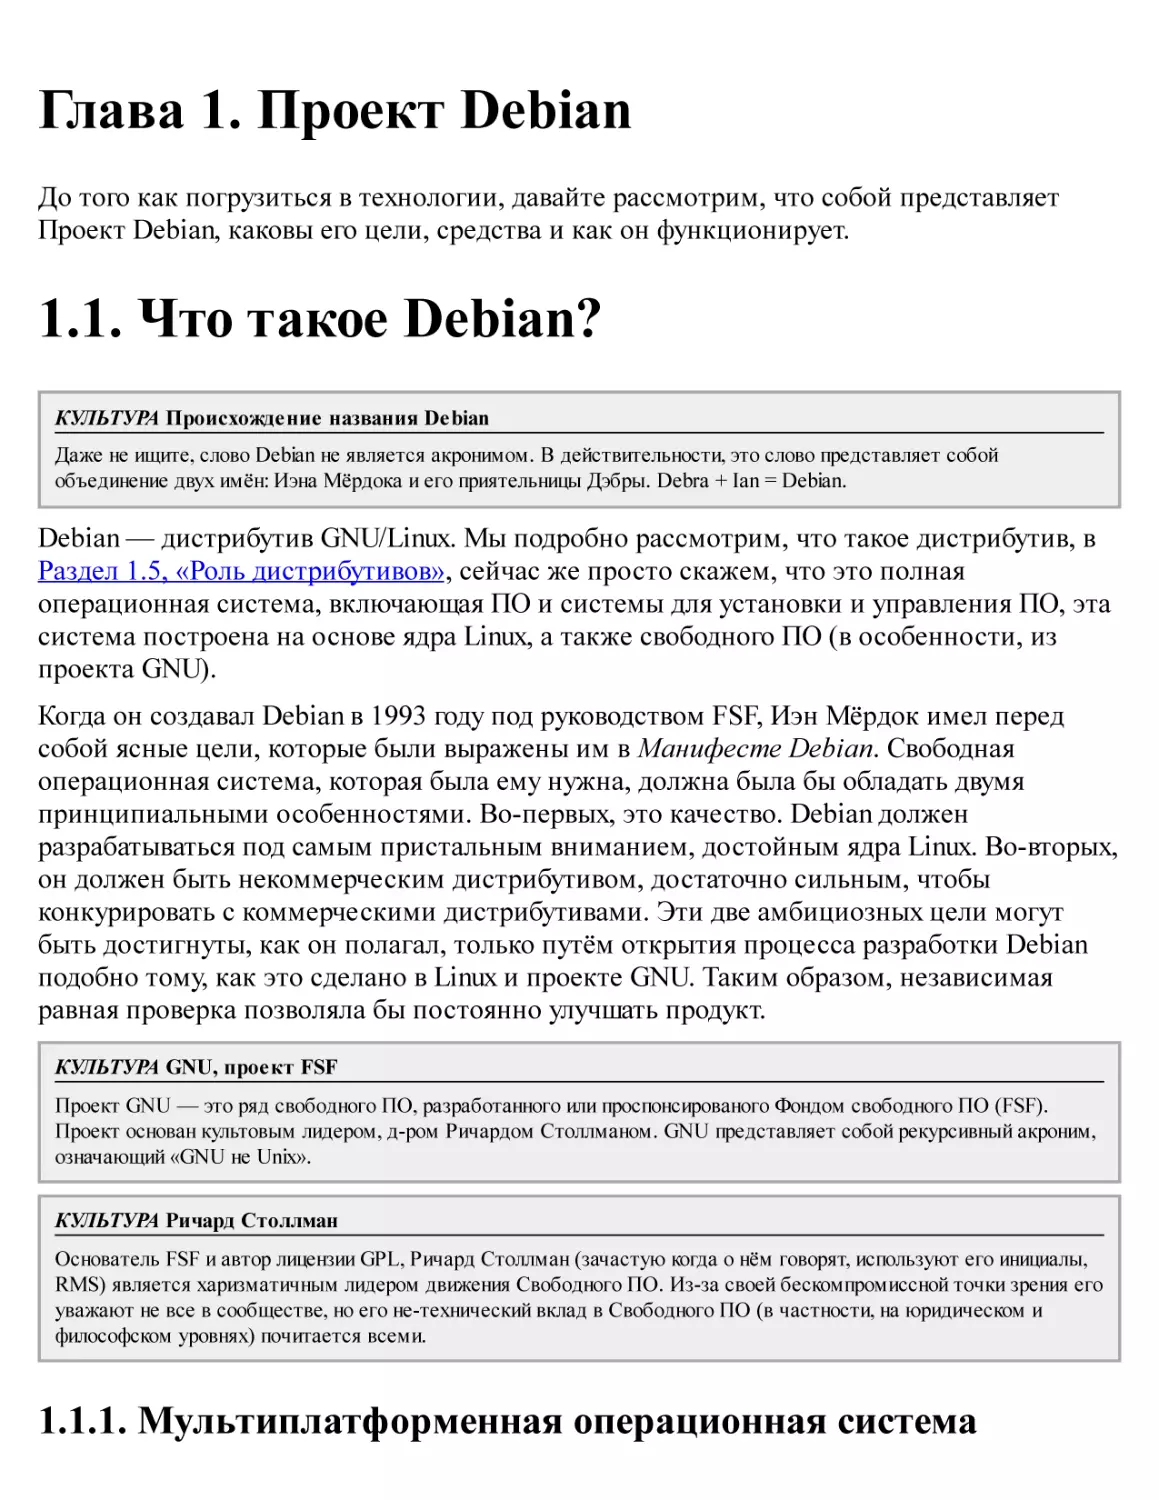 1. Проект Debian
1.1. Что такое Debian?
1.1.1. Мультиплатформенная операционная система